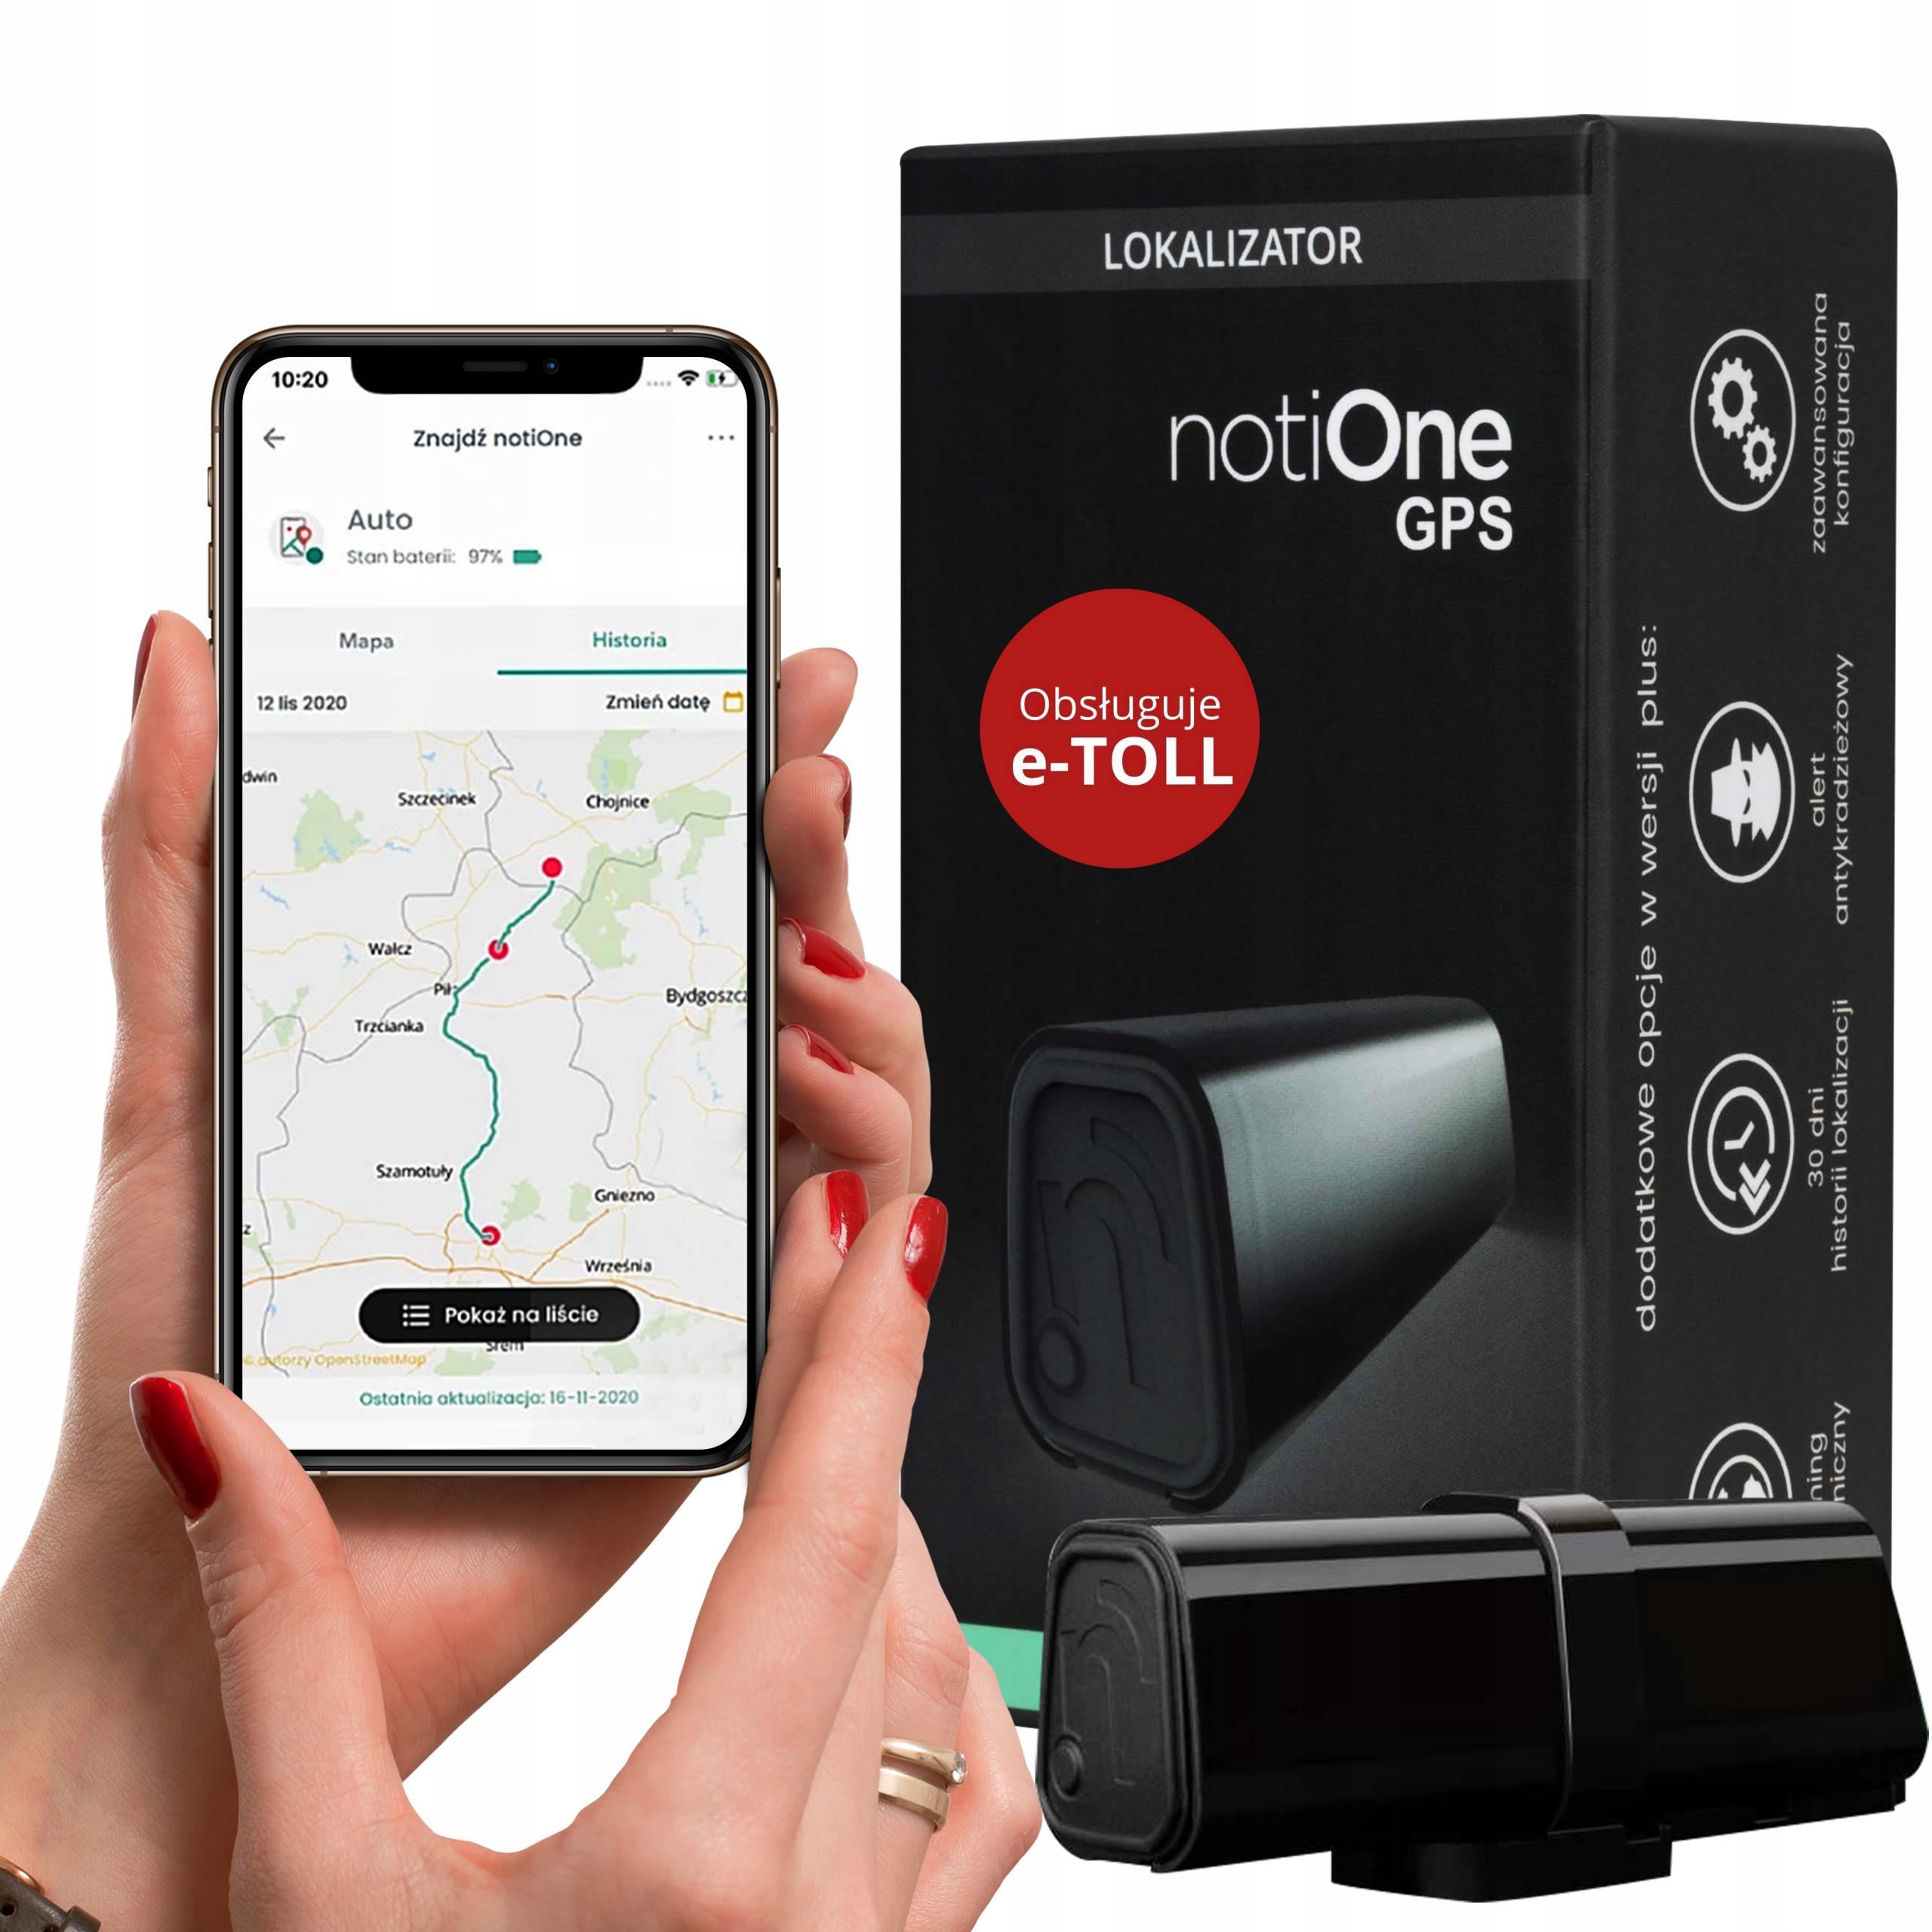 Lokalizator notiOne GPS PLUS (e-TOLL) - najważniejsze cechy i możliwości urządzenia: